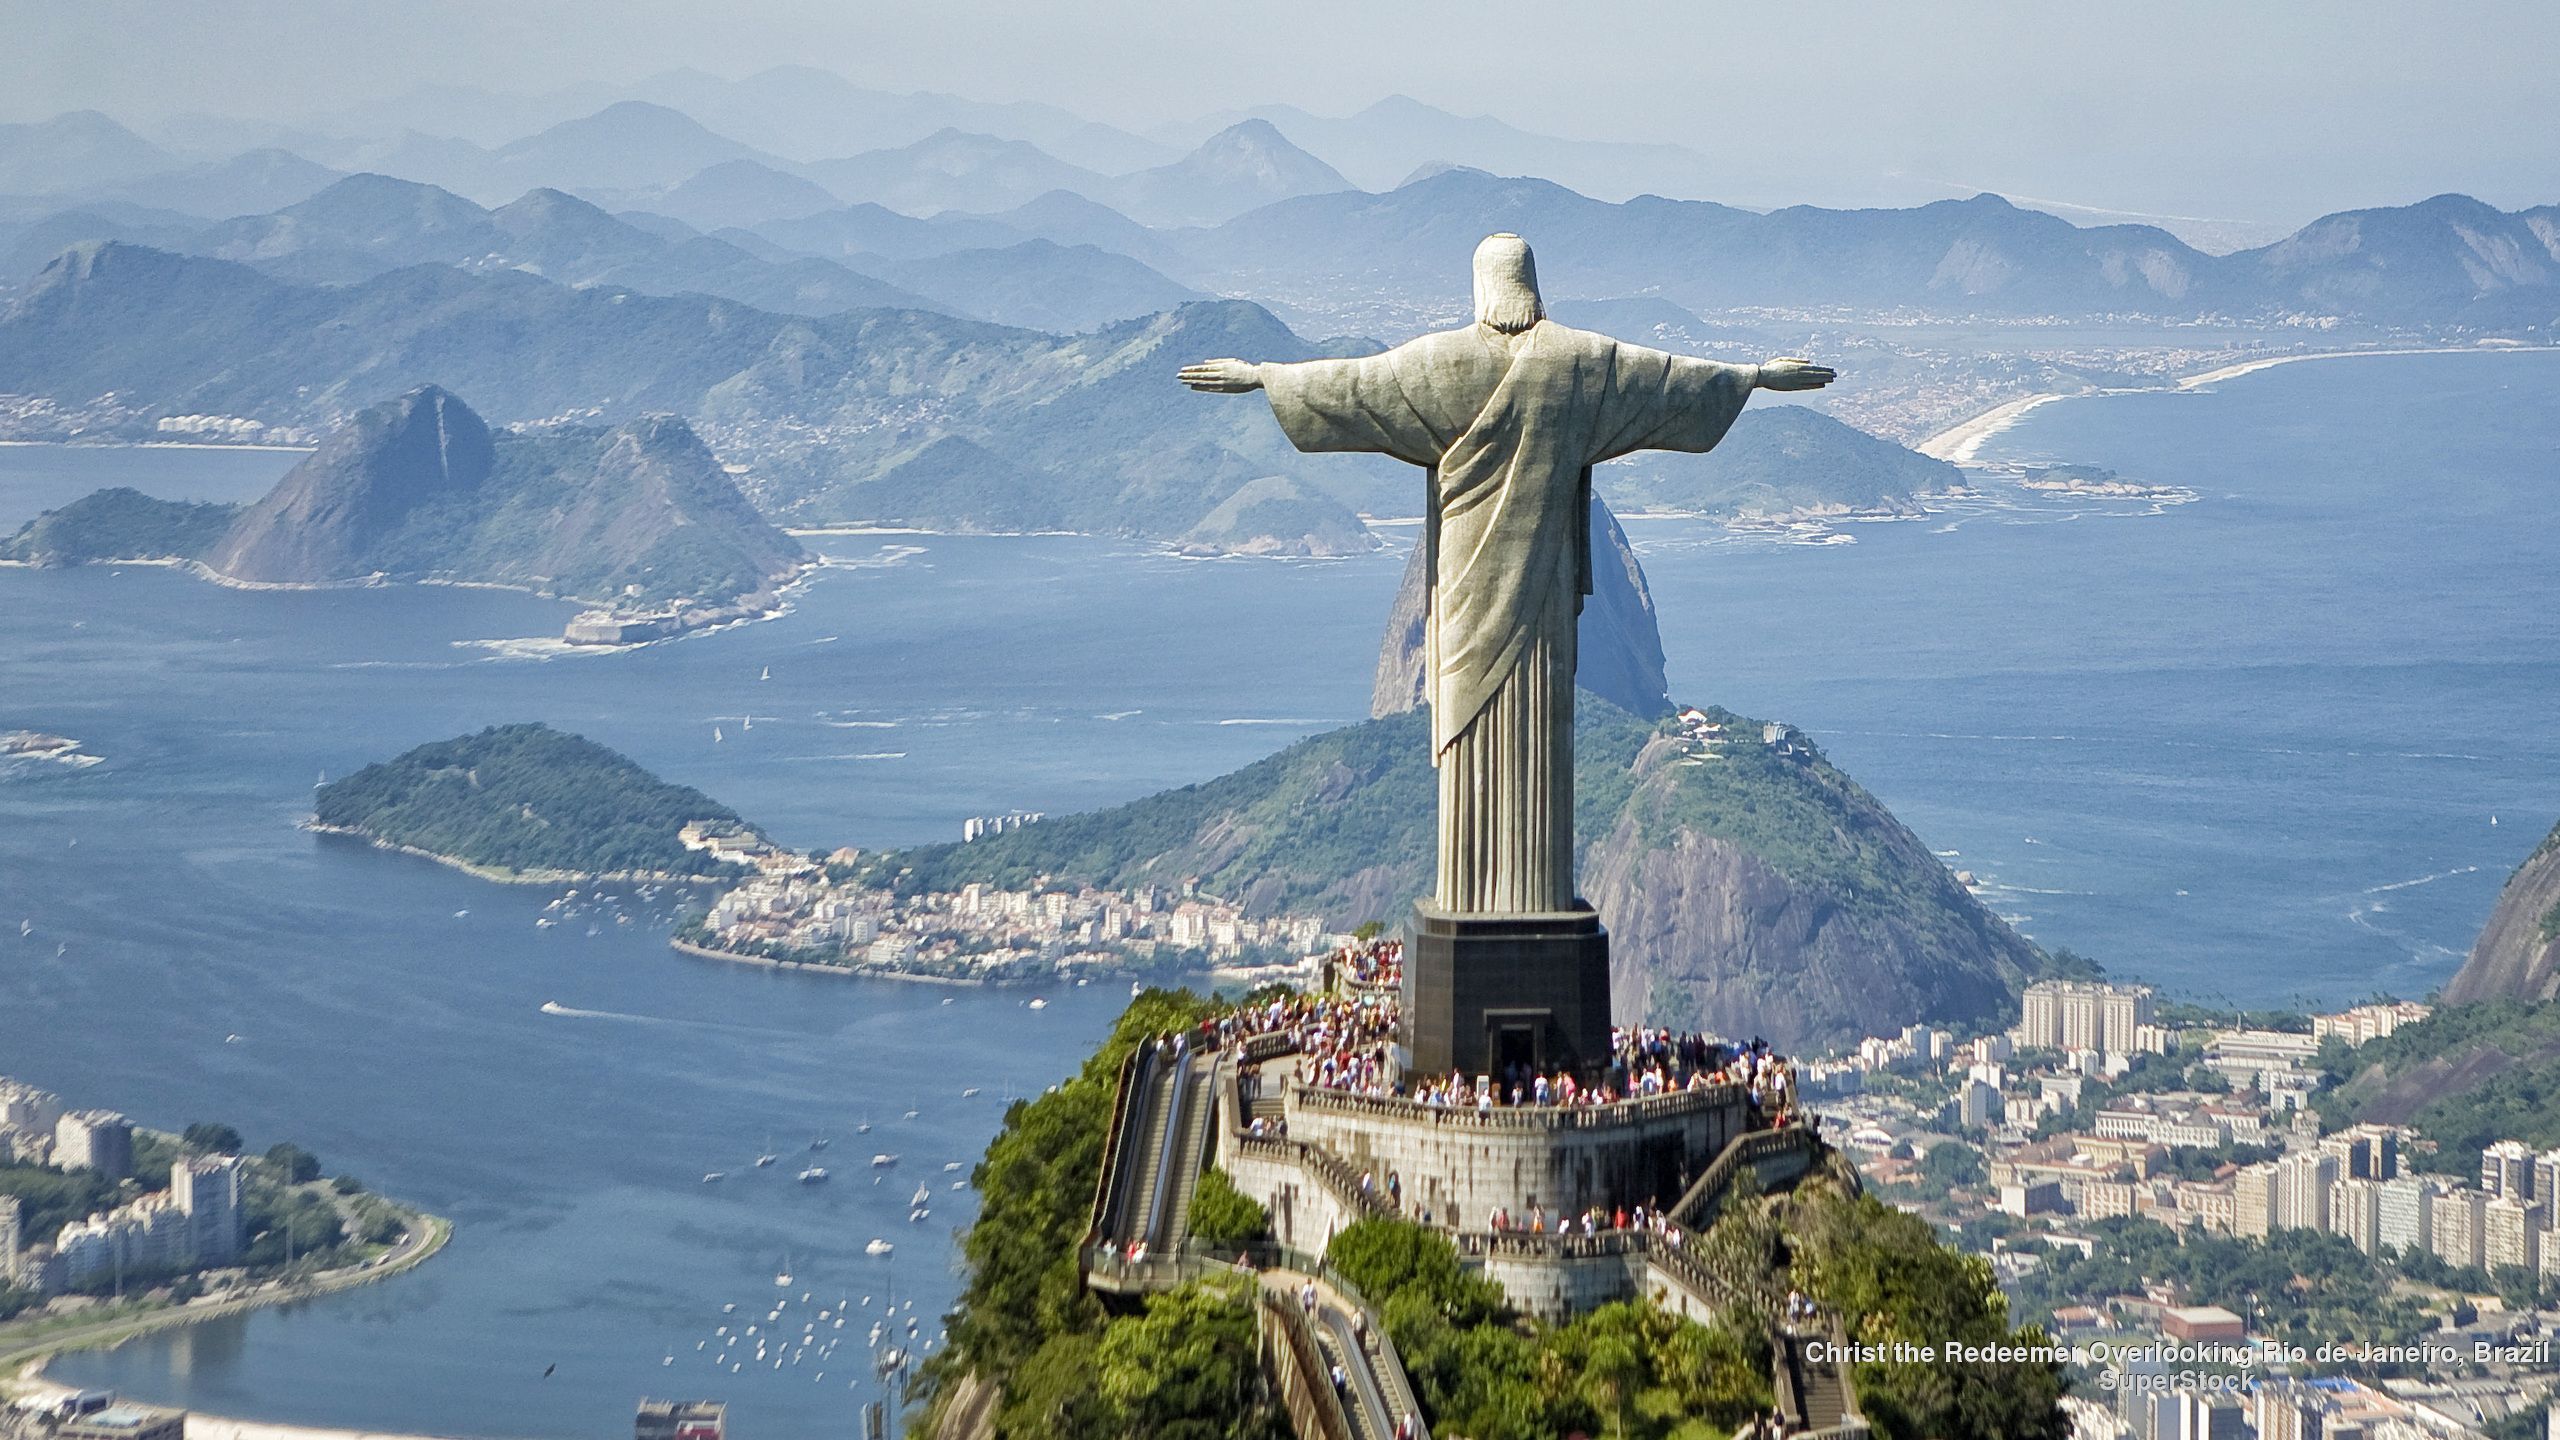 Christ the Redeemer Overlooking Rio de Janeiro, Brazil. Wonders